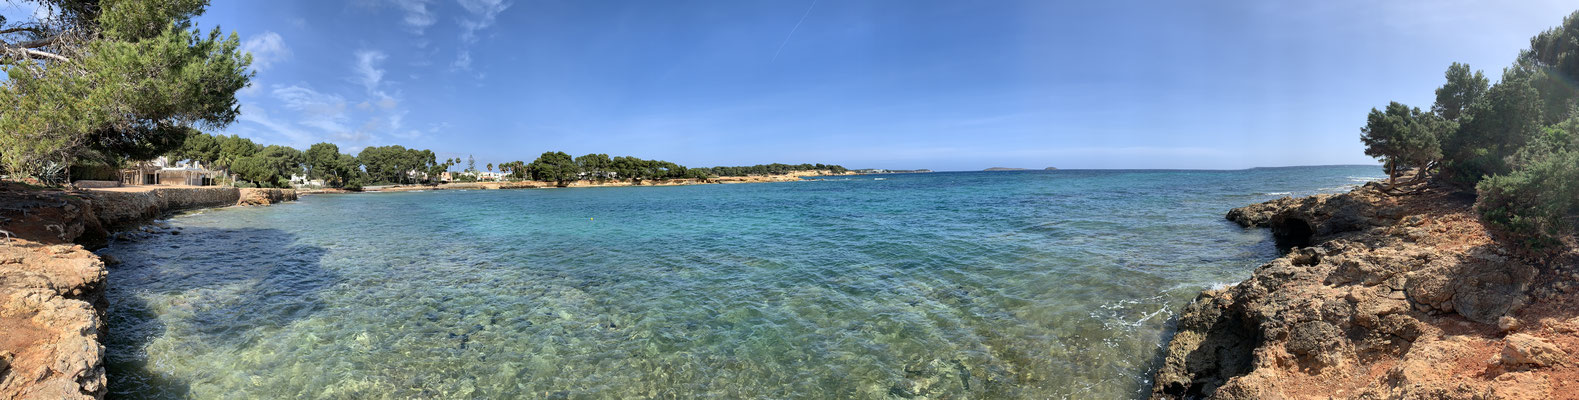 Blick auf das Meer, Babylon Beach, Ibiza